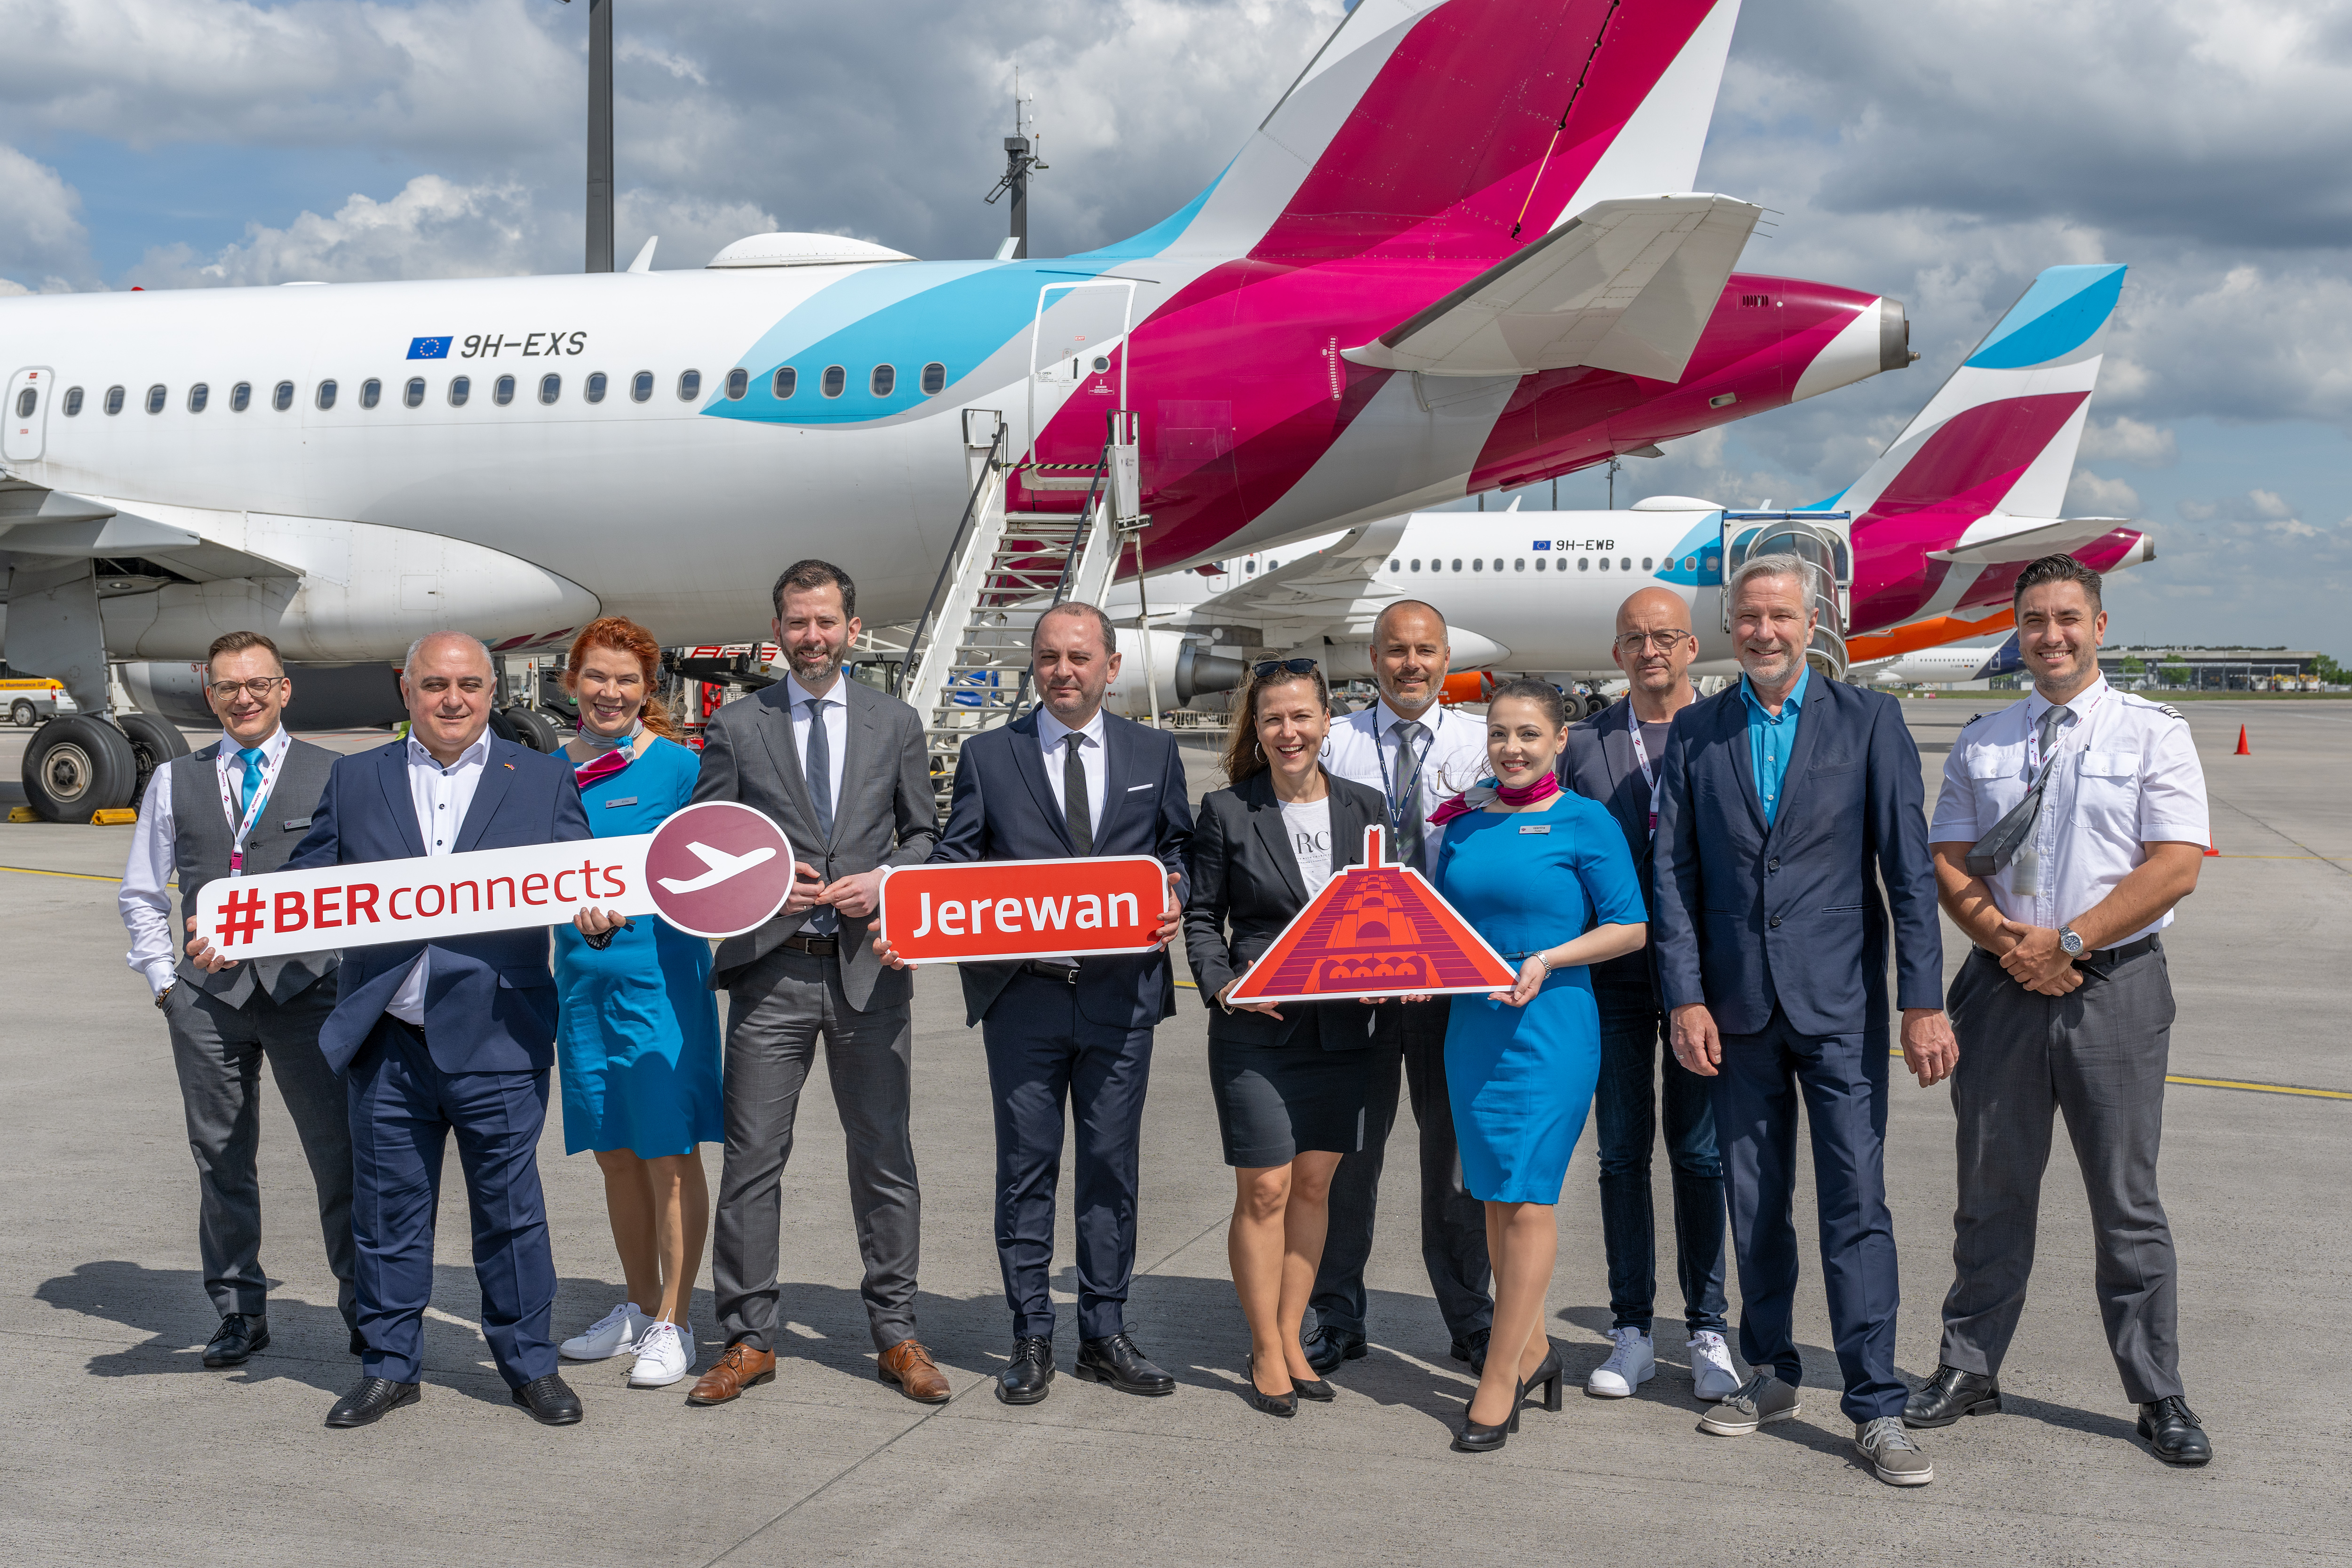 Eine Eurowings-Crew und weitere Personen vor einem Flugzeug, alle lächeln in die Kamera und halten Schilder in den Händen. Darauf steht "#BER connects", "Jerewan" © Günter Wicker / FBB